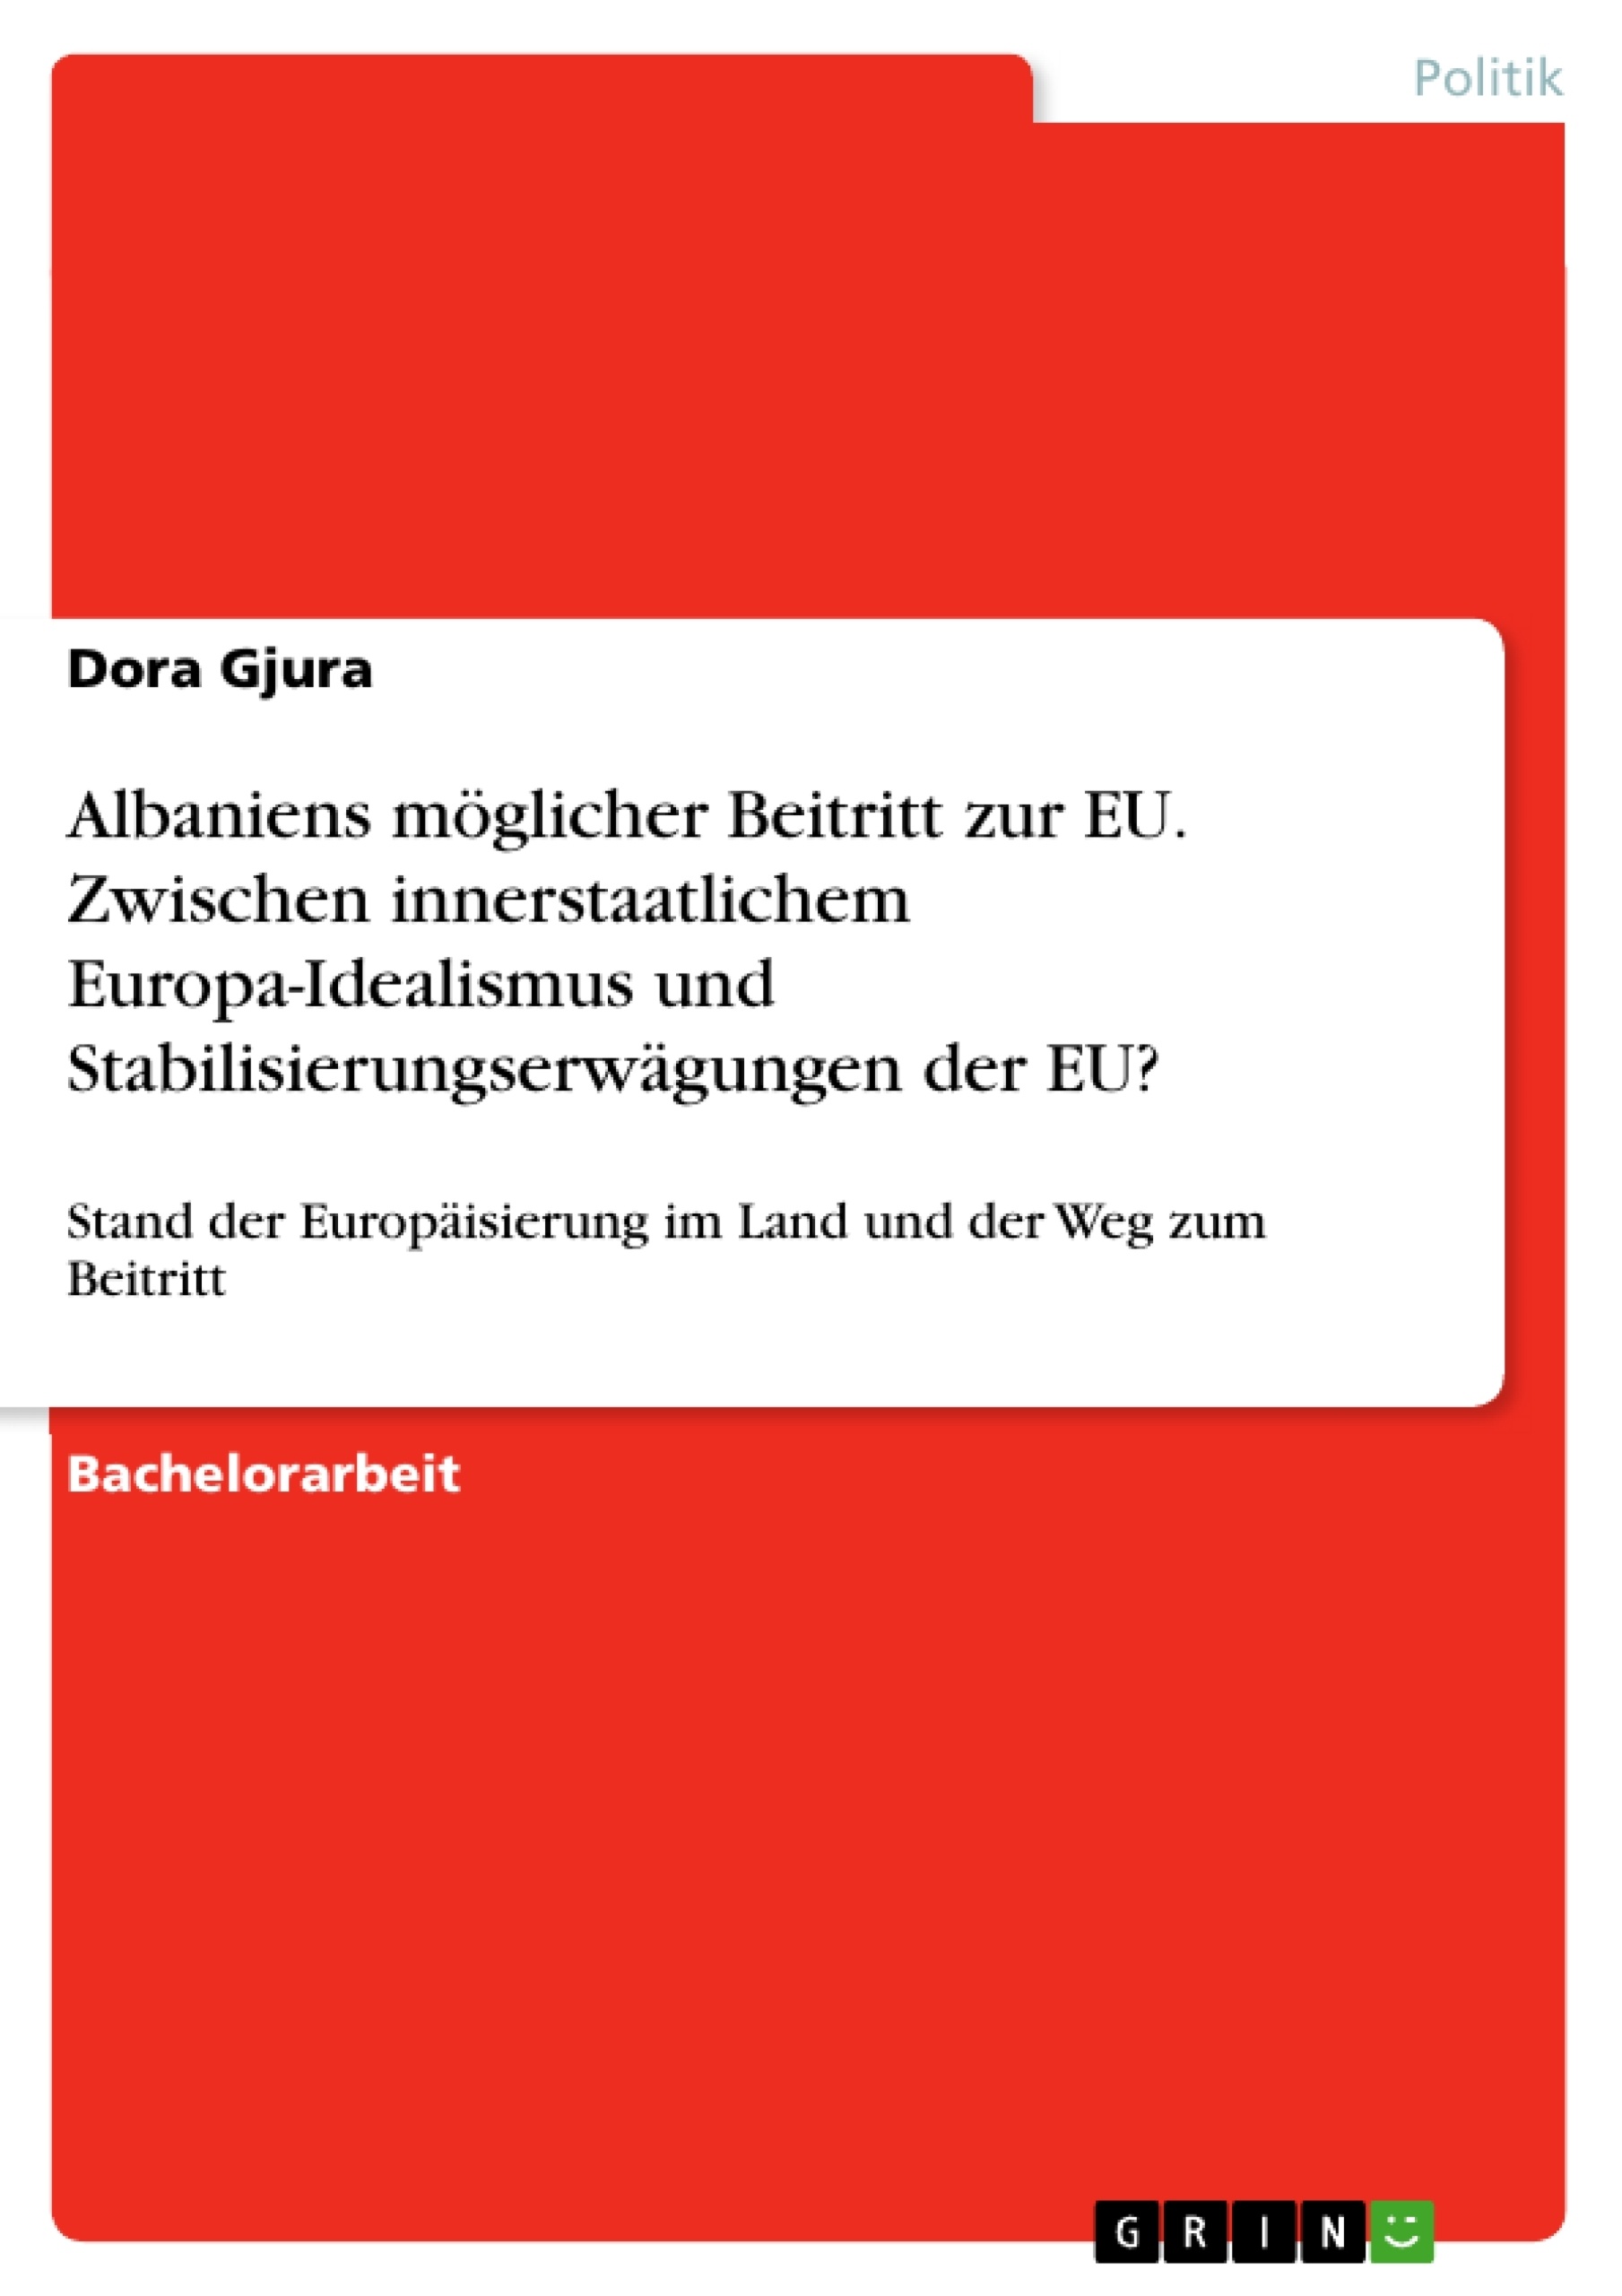 Titel: Albaniens möglicher Beitritt zur EU. Zwischen innerstaatlichem Europa-Idealismus und Stabilisierungserwägungen der EU?